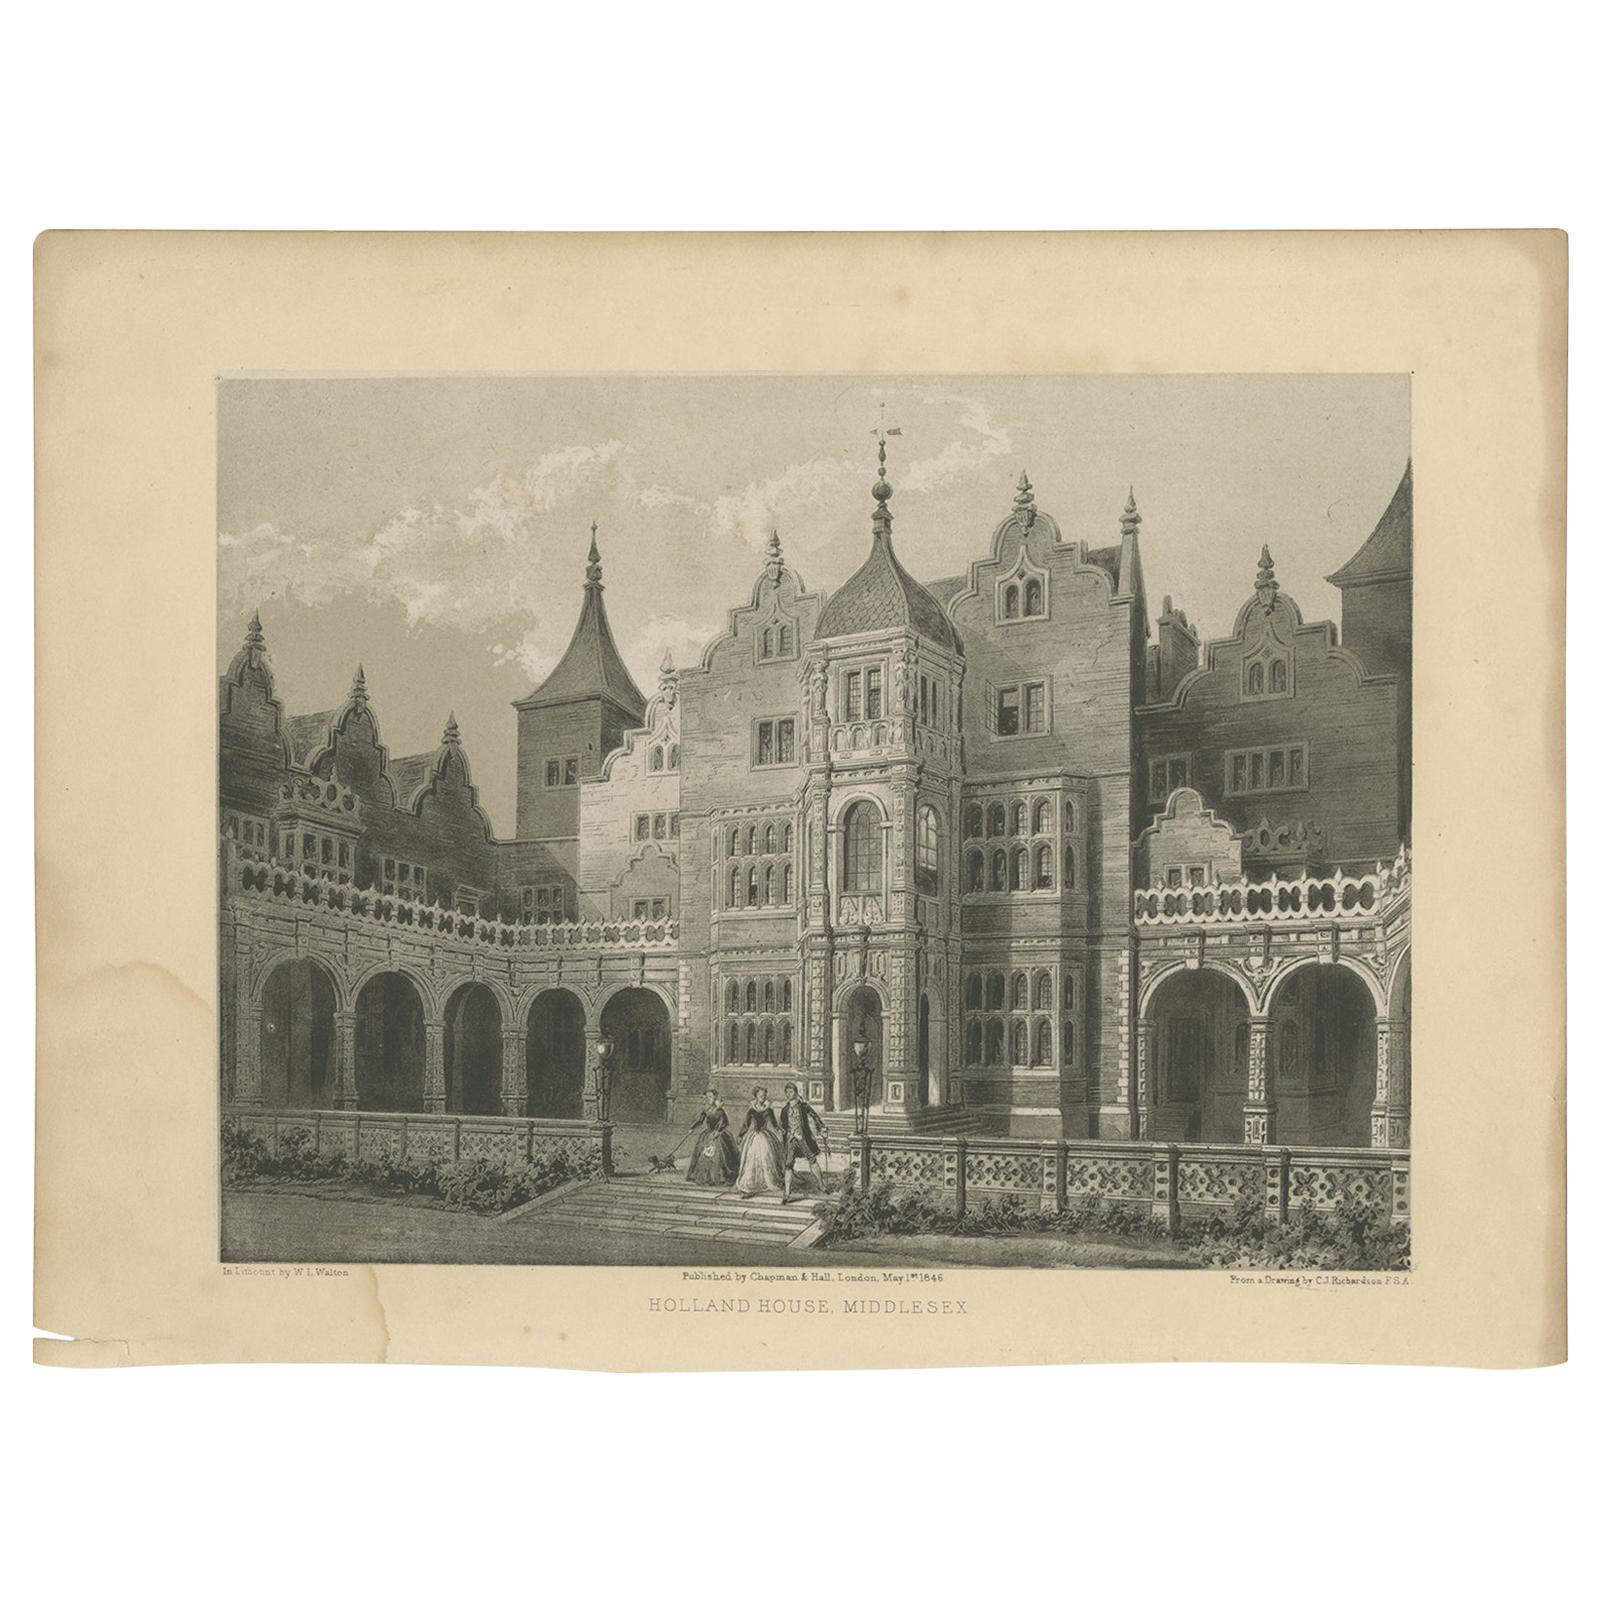 Impression ancienne de la Holland House dans le Middlesex par Hall, 1846